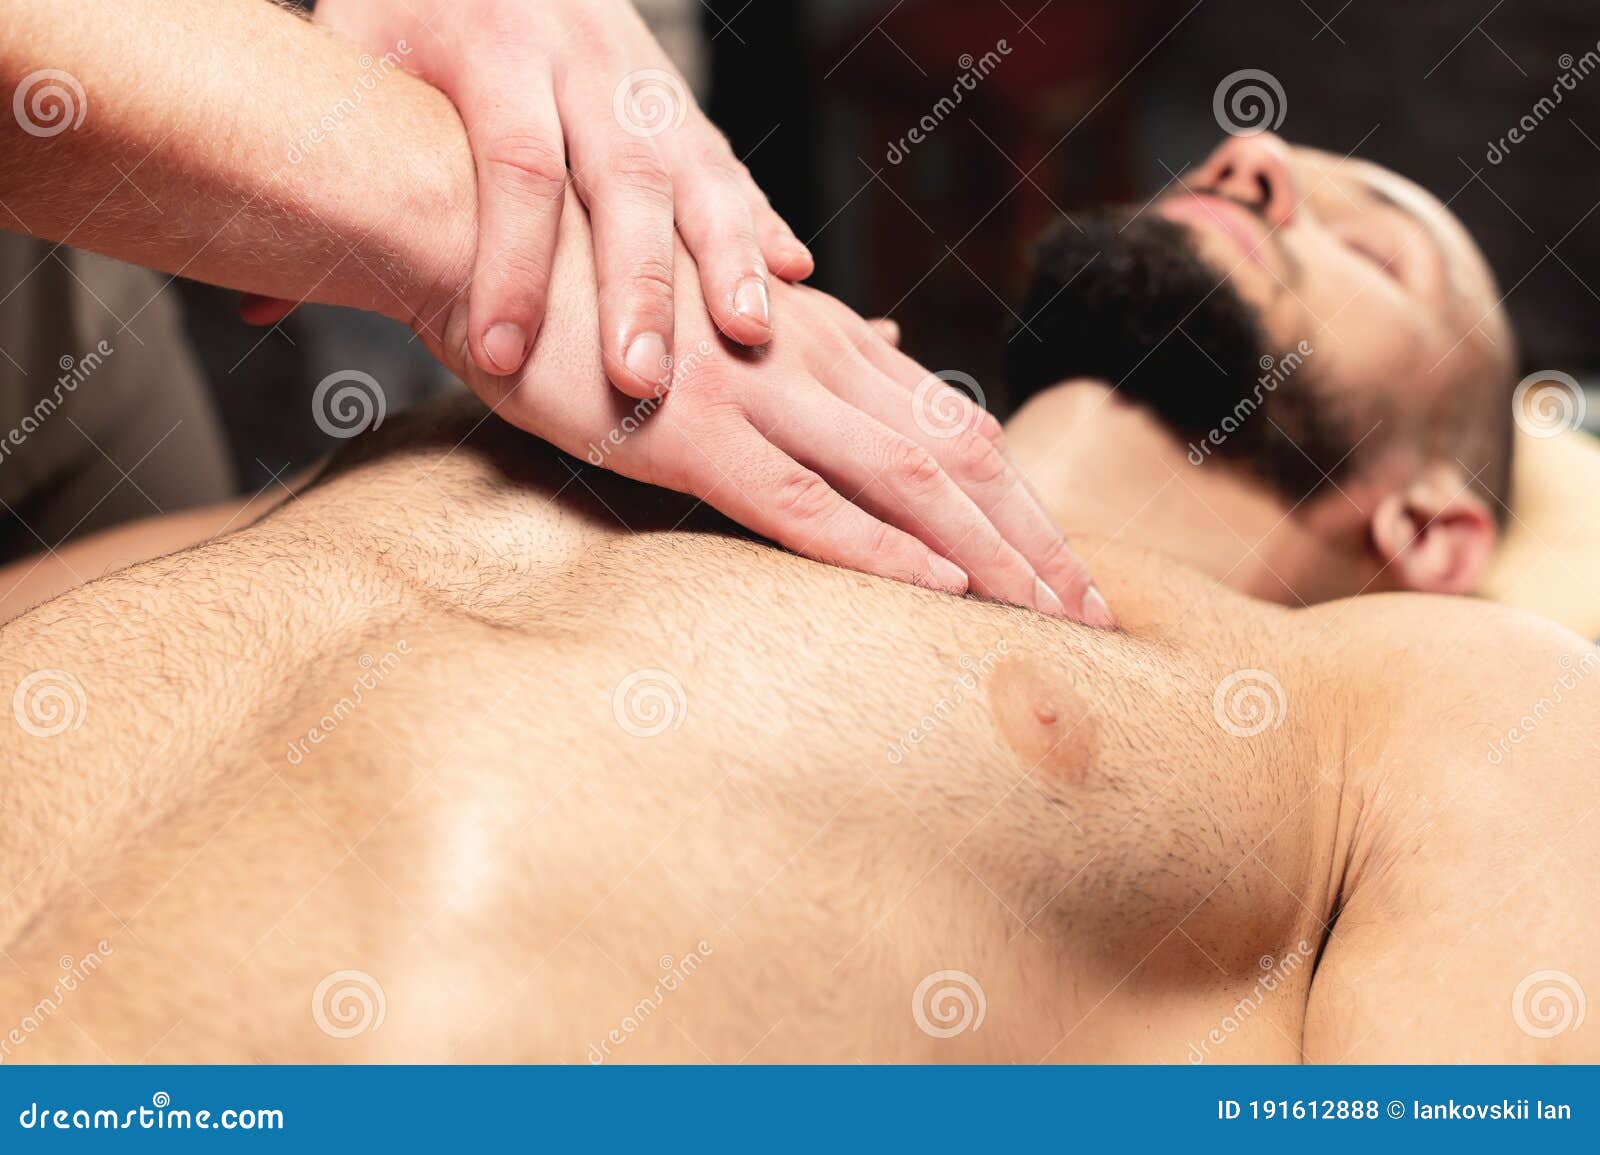 Видео жена делает массаж мужу. Мужской спортивный массаж. Спортивный массаж парень парню. Массаж мужской груди. Массаж спортивный для мужчин.